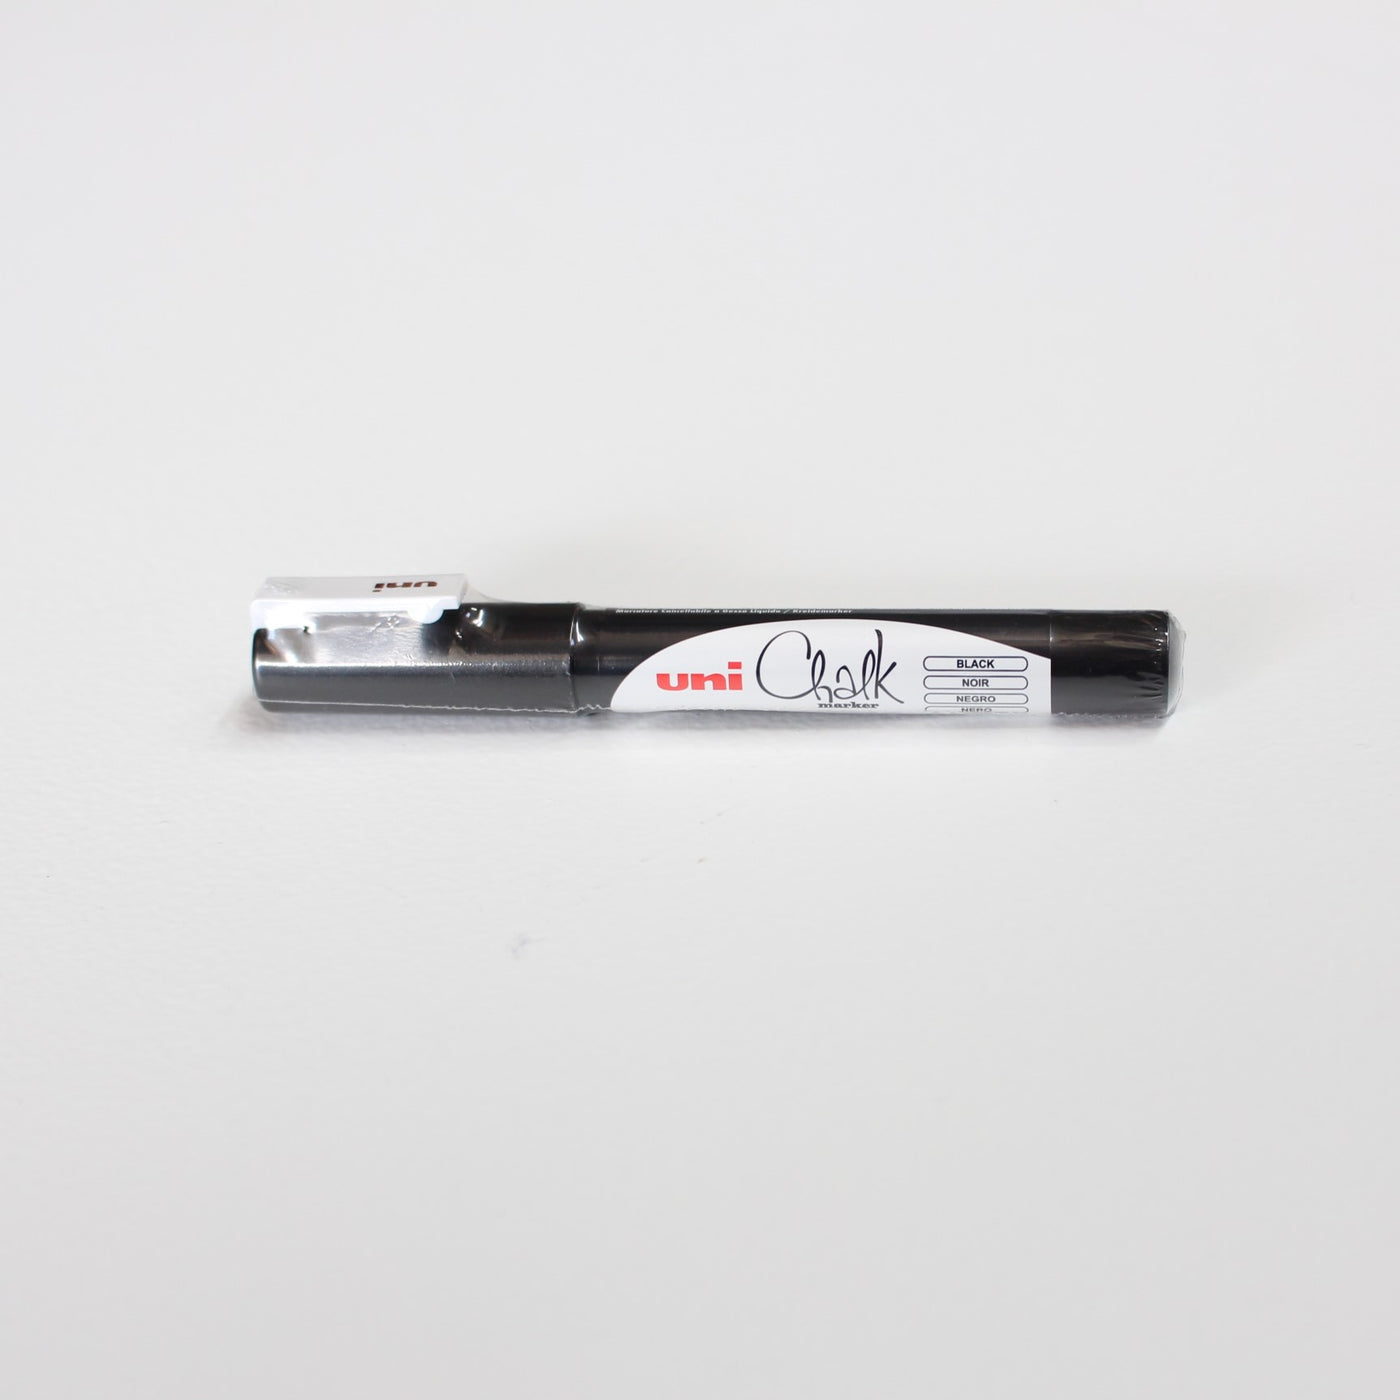 Black - Fine Tip Uniball Chalk Wet Erase Marker